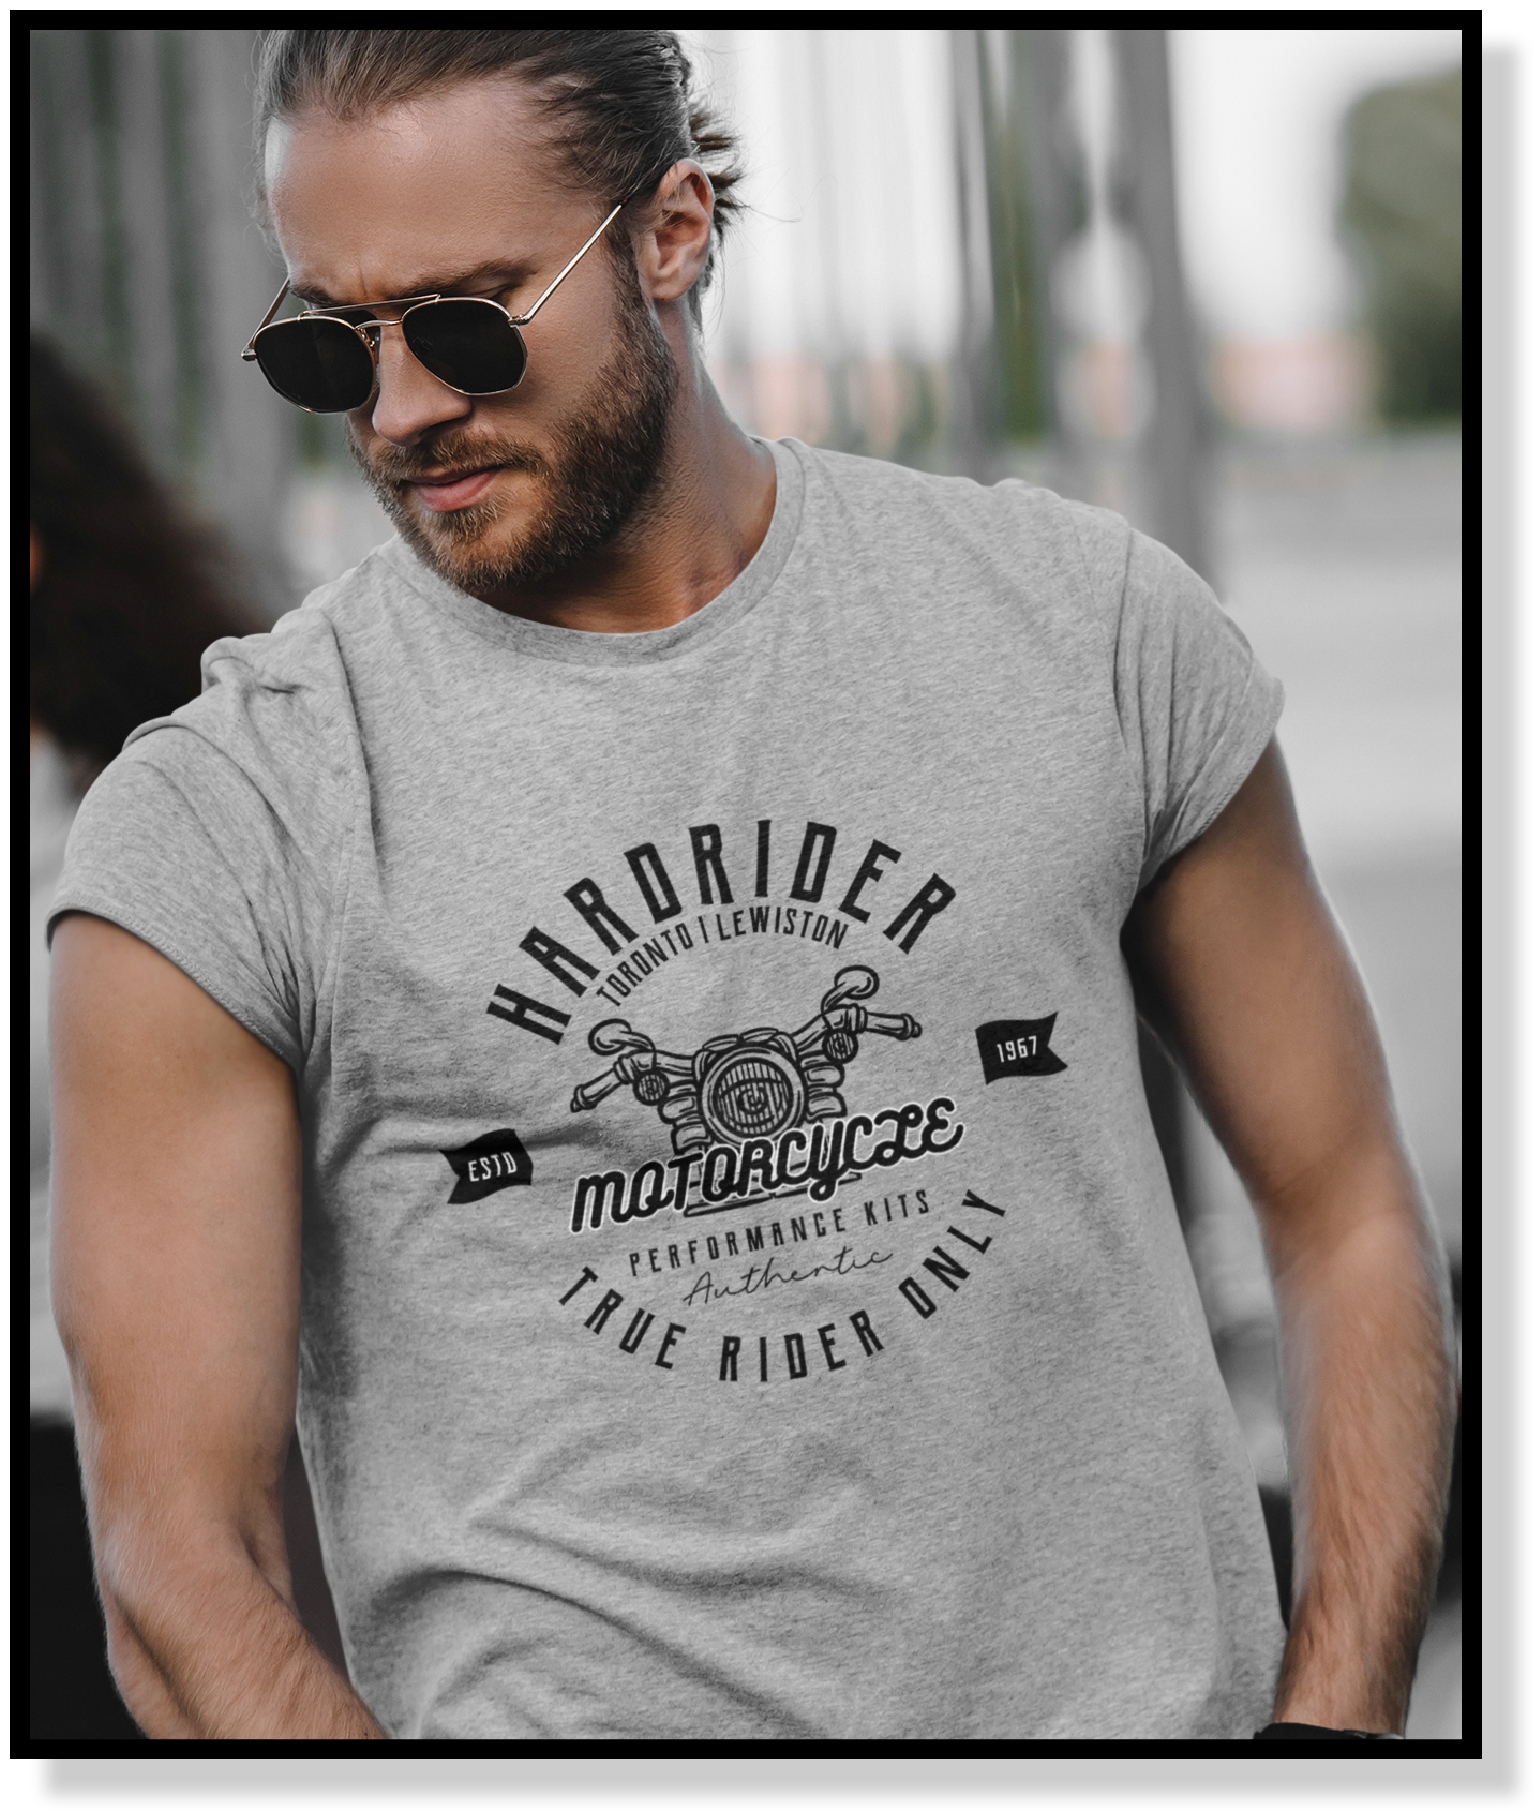 HardRider-true-rider-tshirts